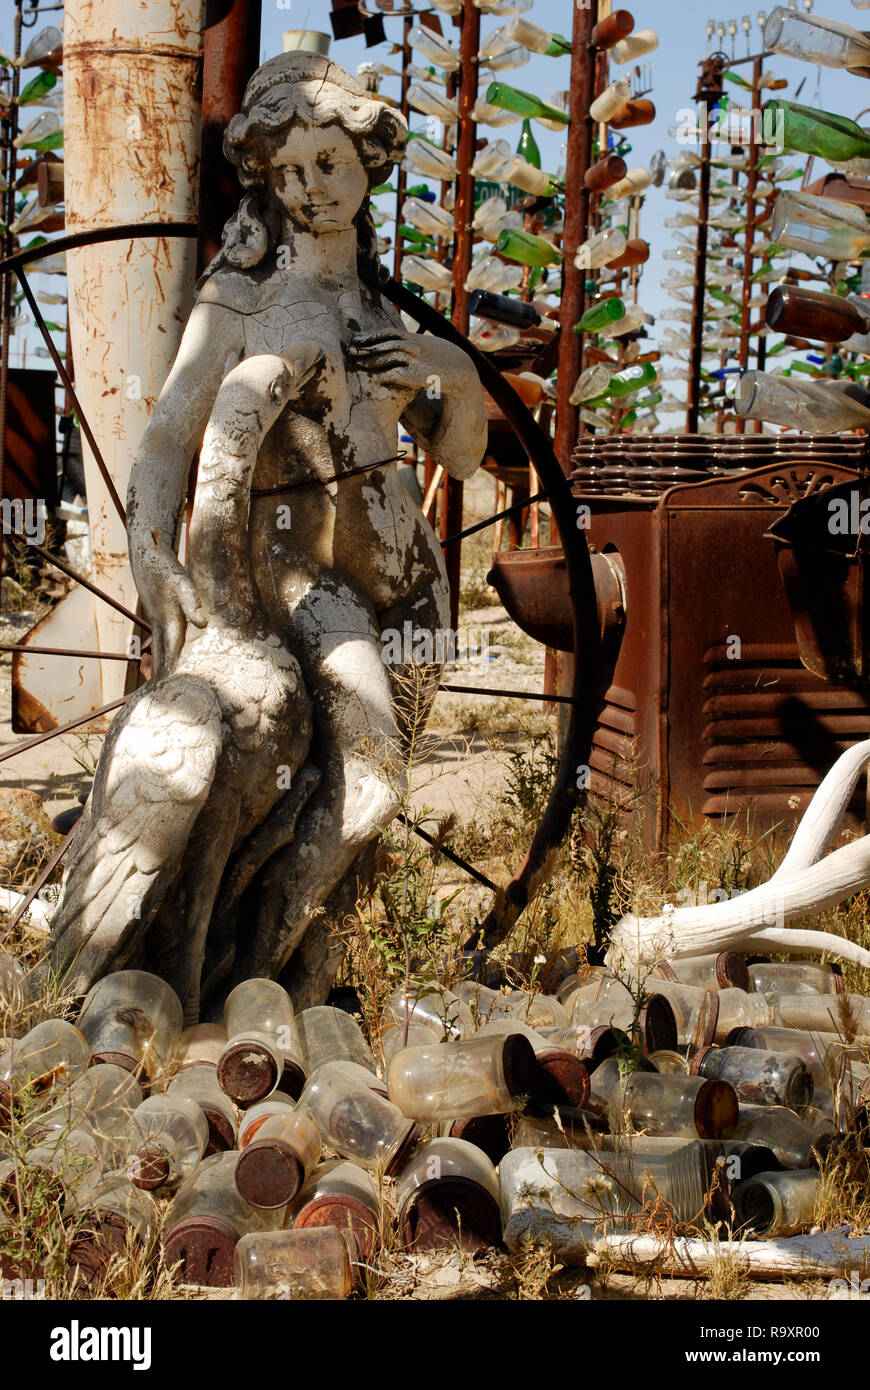 Eine Skulptur und andere Objekte an der Flasche Tree Ranch, einer beliebten Straße kunst Installation von Elmer lange auf der Route 66 in der Oro Grande, Kalifornien erstellt. Stockfoto